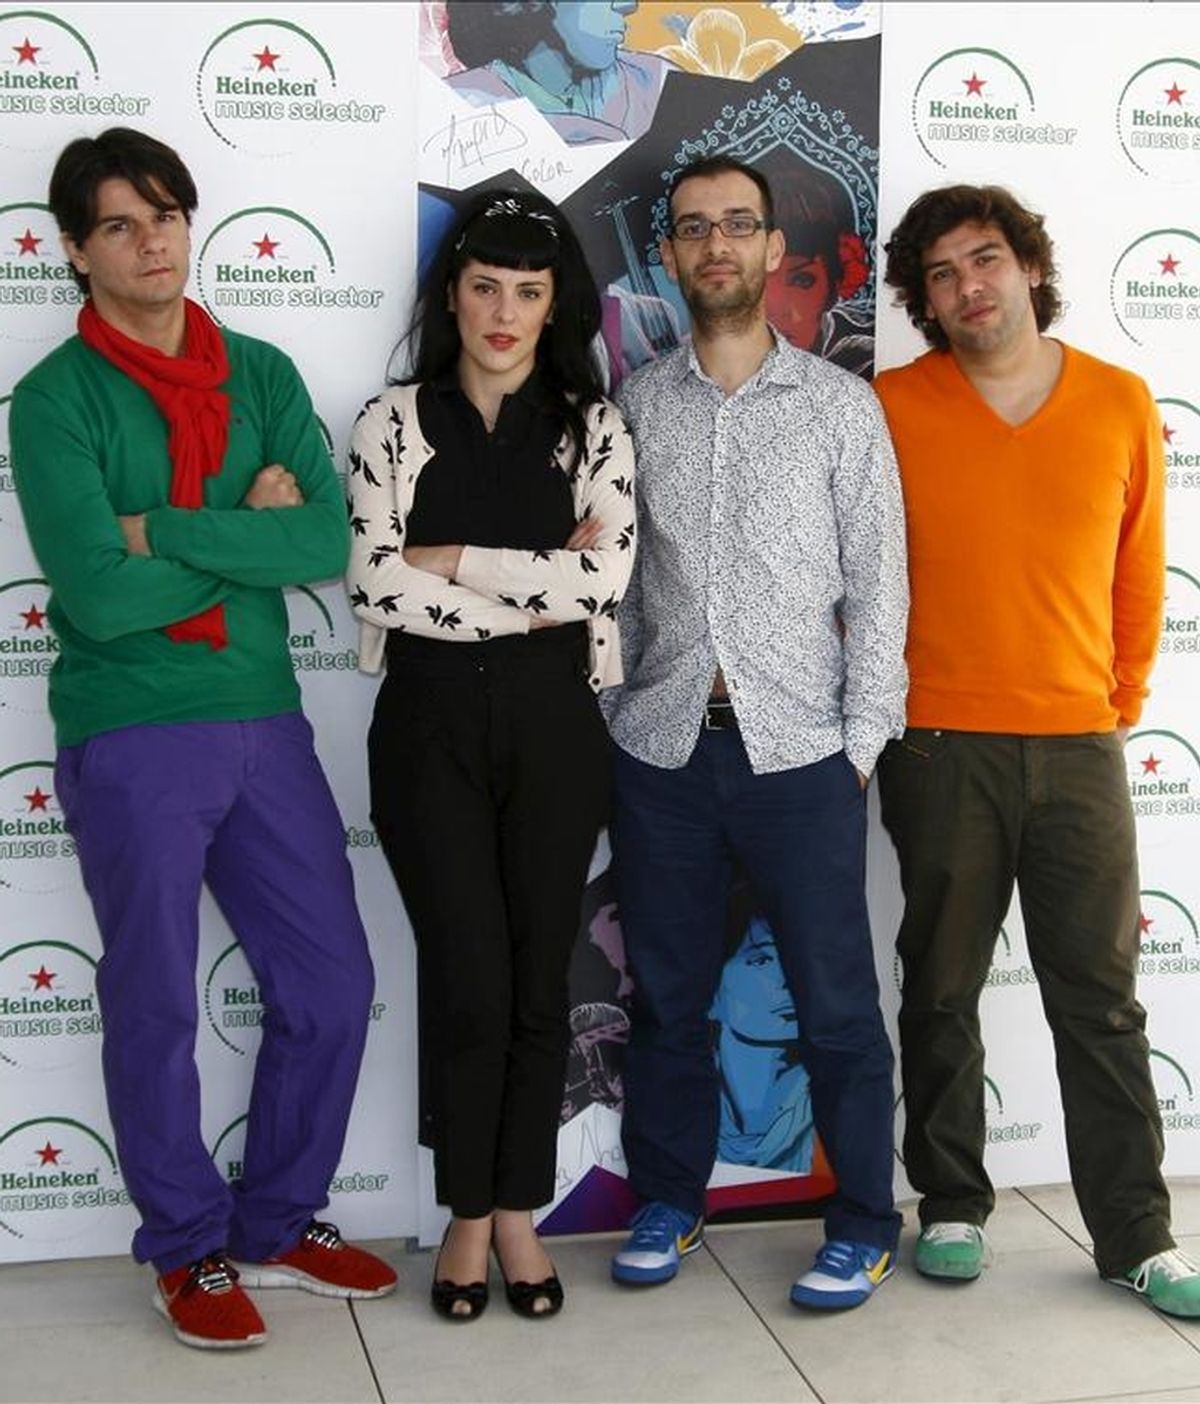 Los integrantes del grupo de pop electrónico y rock alternativo The Gift, número 1 de ventas en su país con un disco cantado en inglés, "Explode", durante la entrevista que han concedido a la Agencia Efe hoy en Madrid. EFE